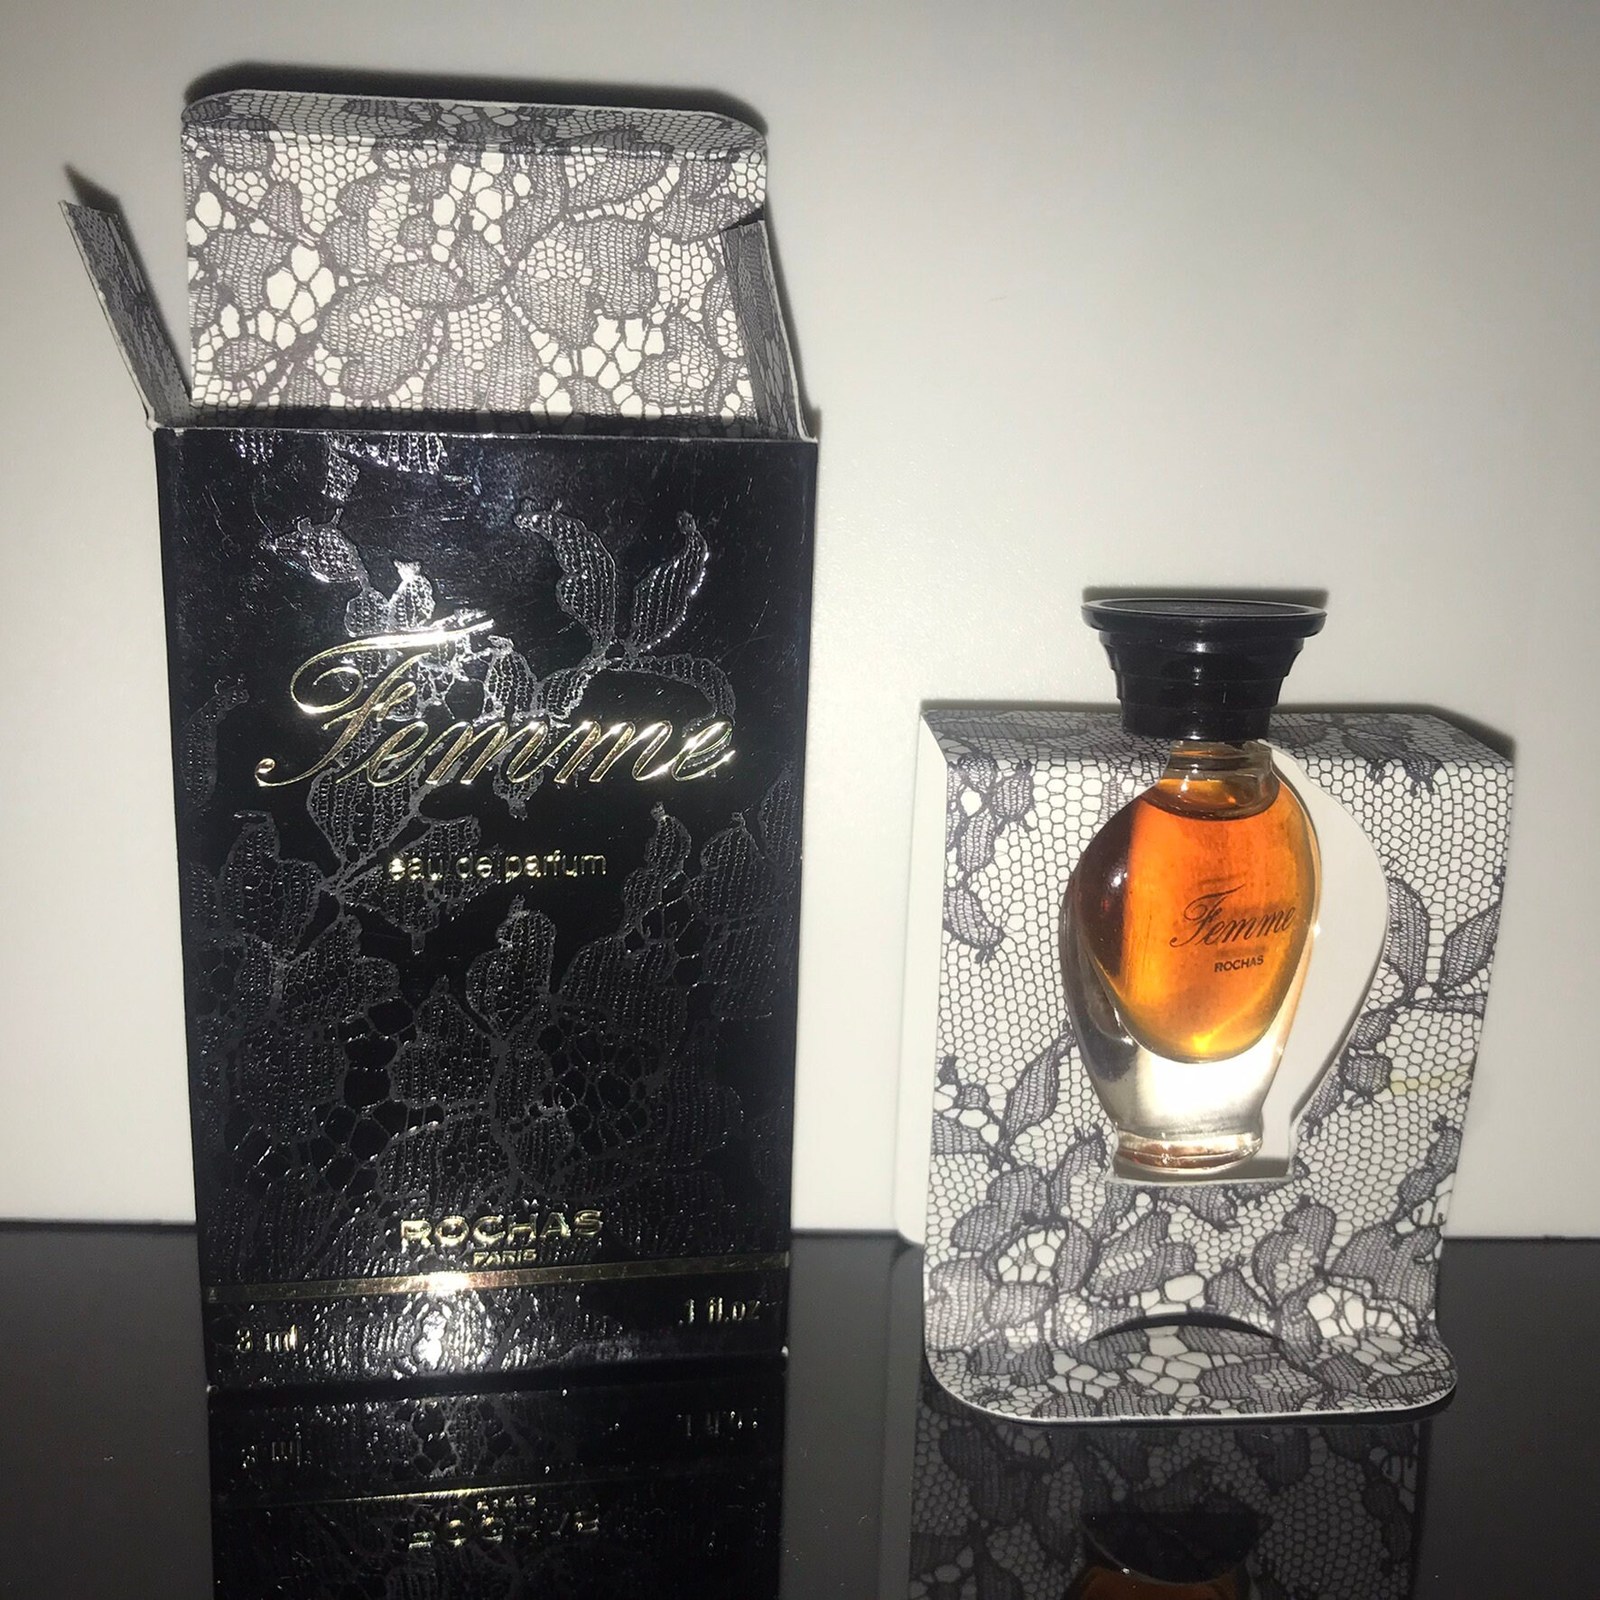 Rochas - Femme - Eau de Parfum - 3 ml - vintage, must have, collectible rare, ve - $29.00